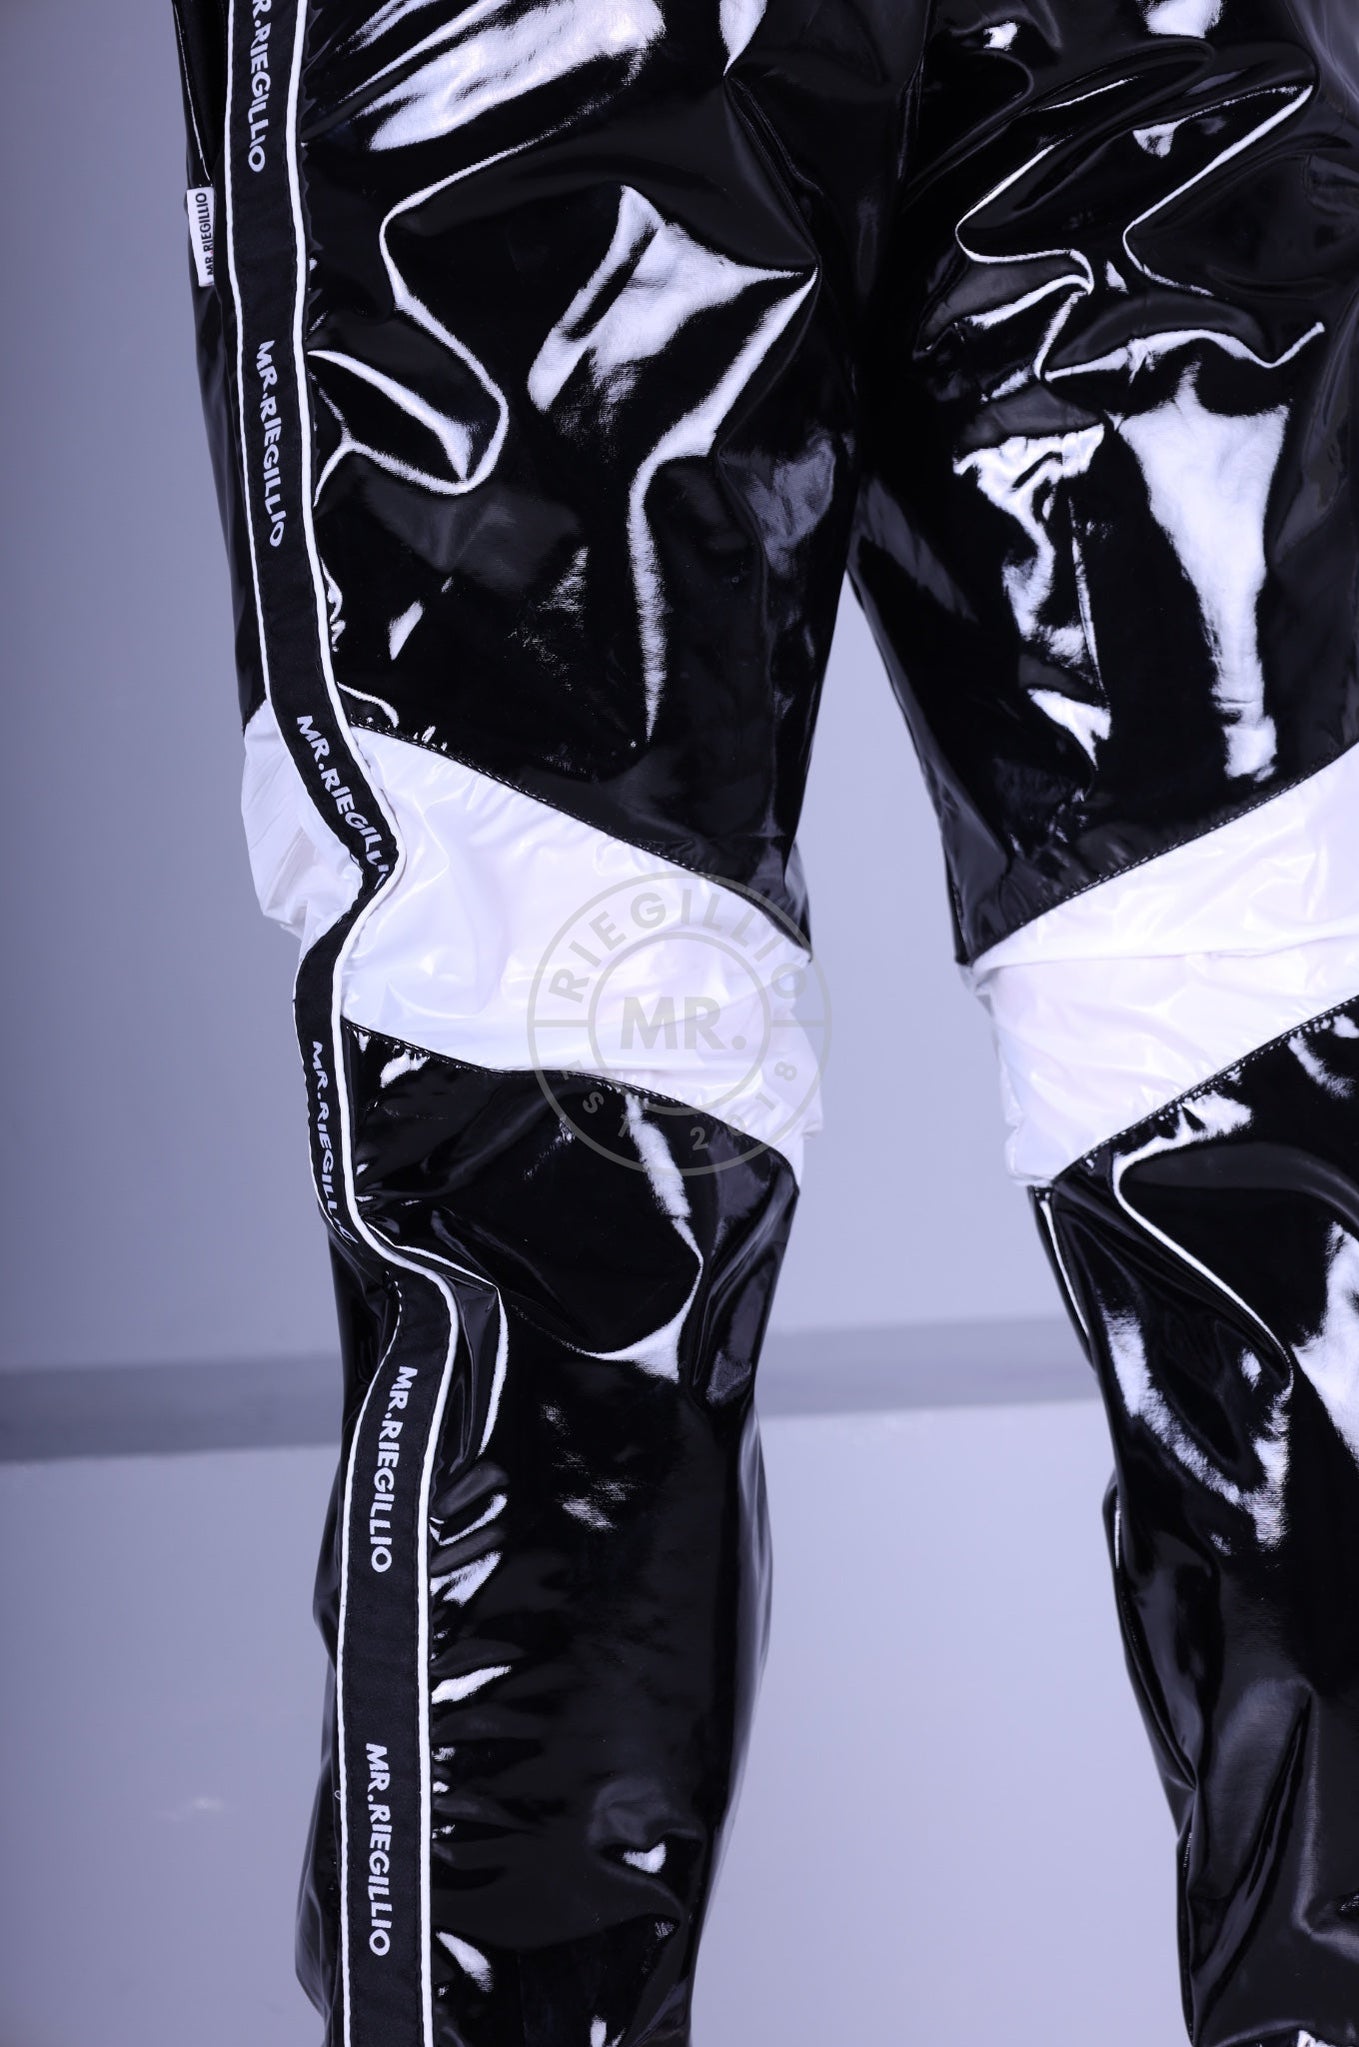 Black PVC Tracksuit Pants - Nylon Panels at MR. Riegillio